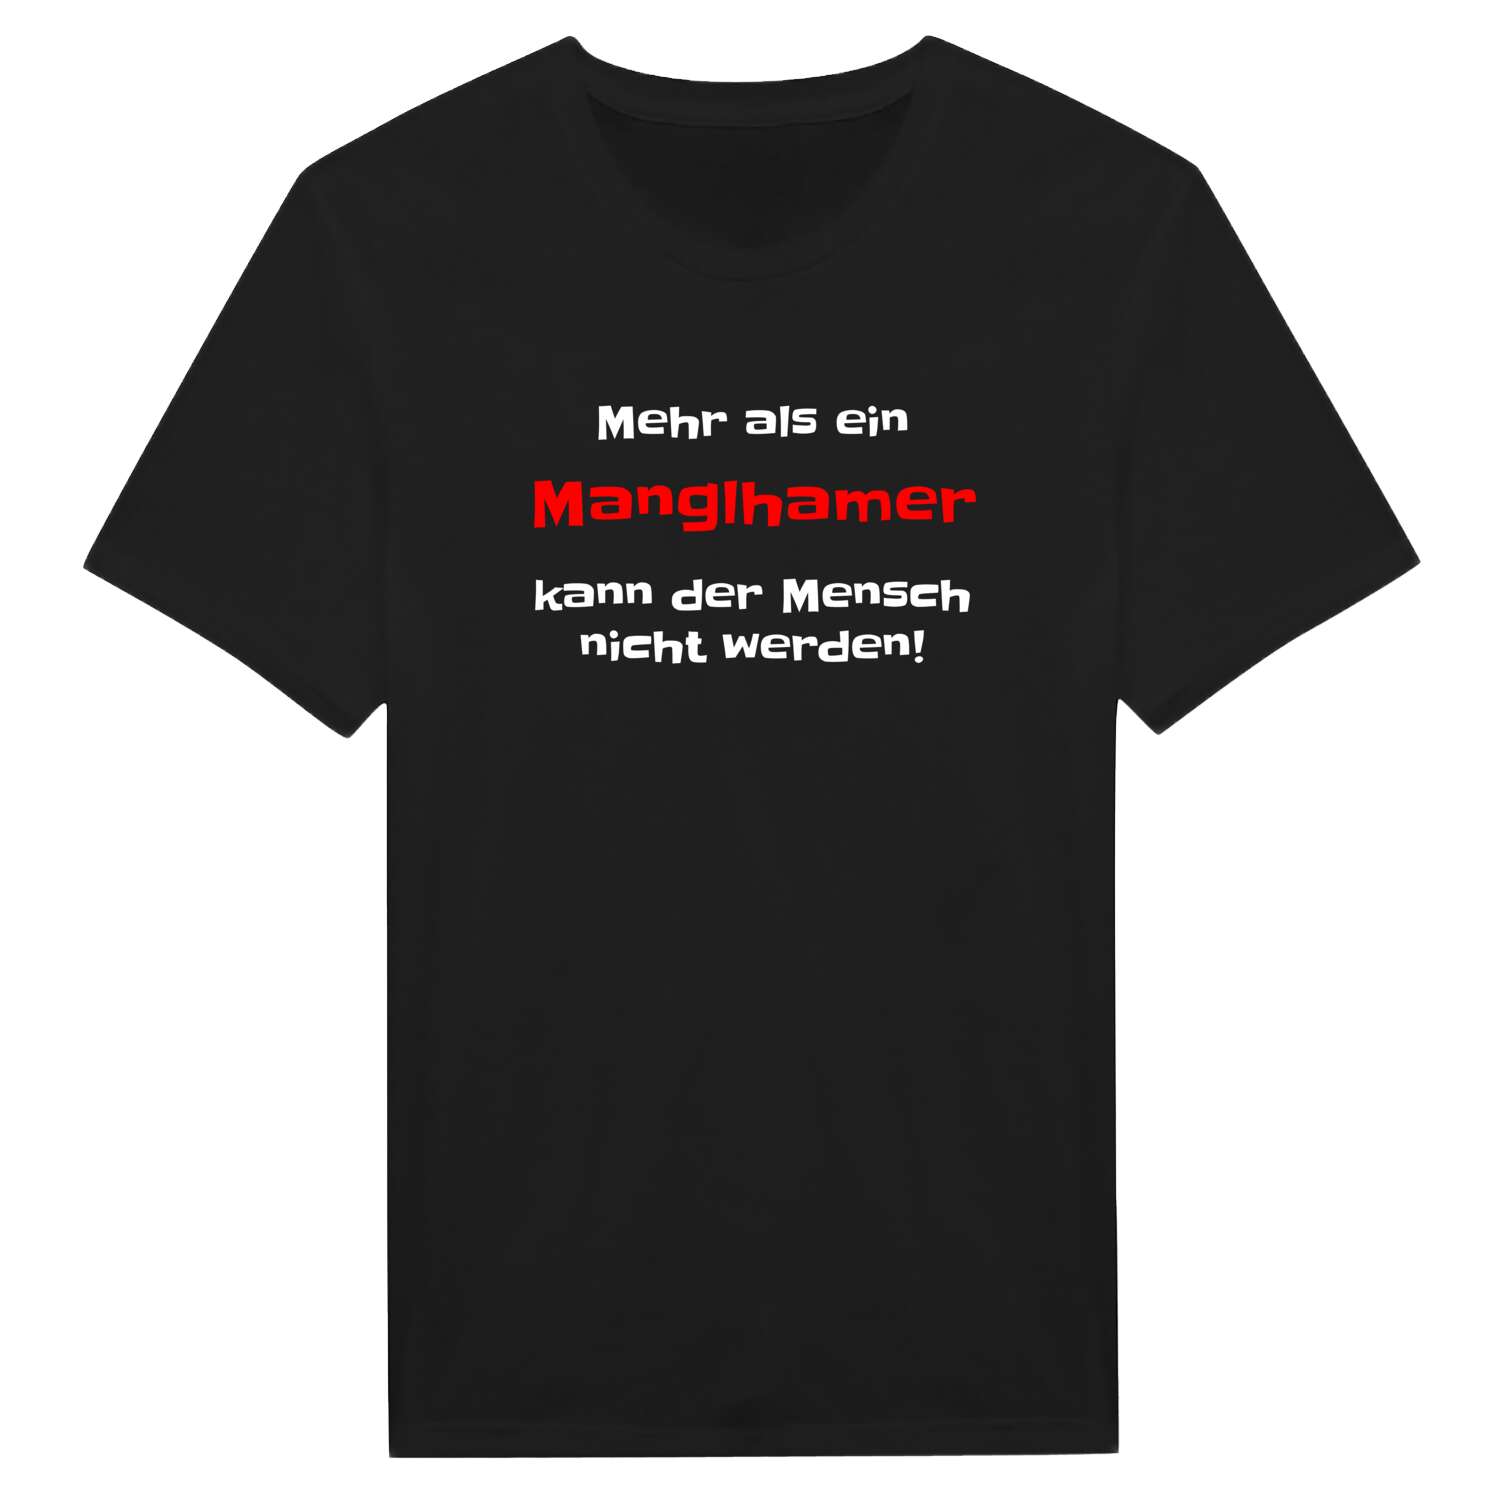 Manglham T-Shirt »Mehr als ein«